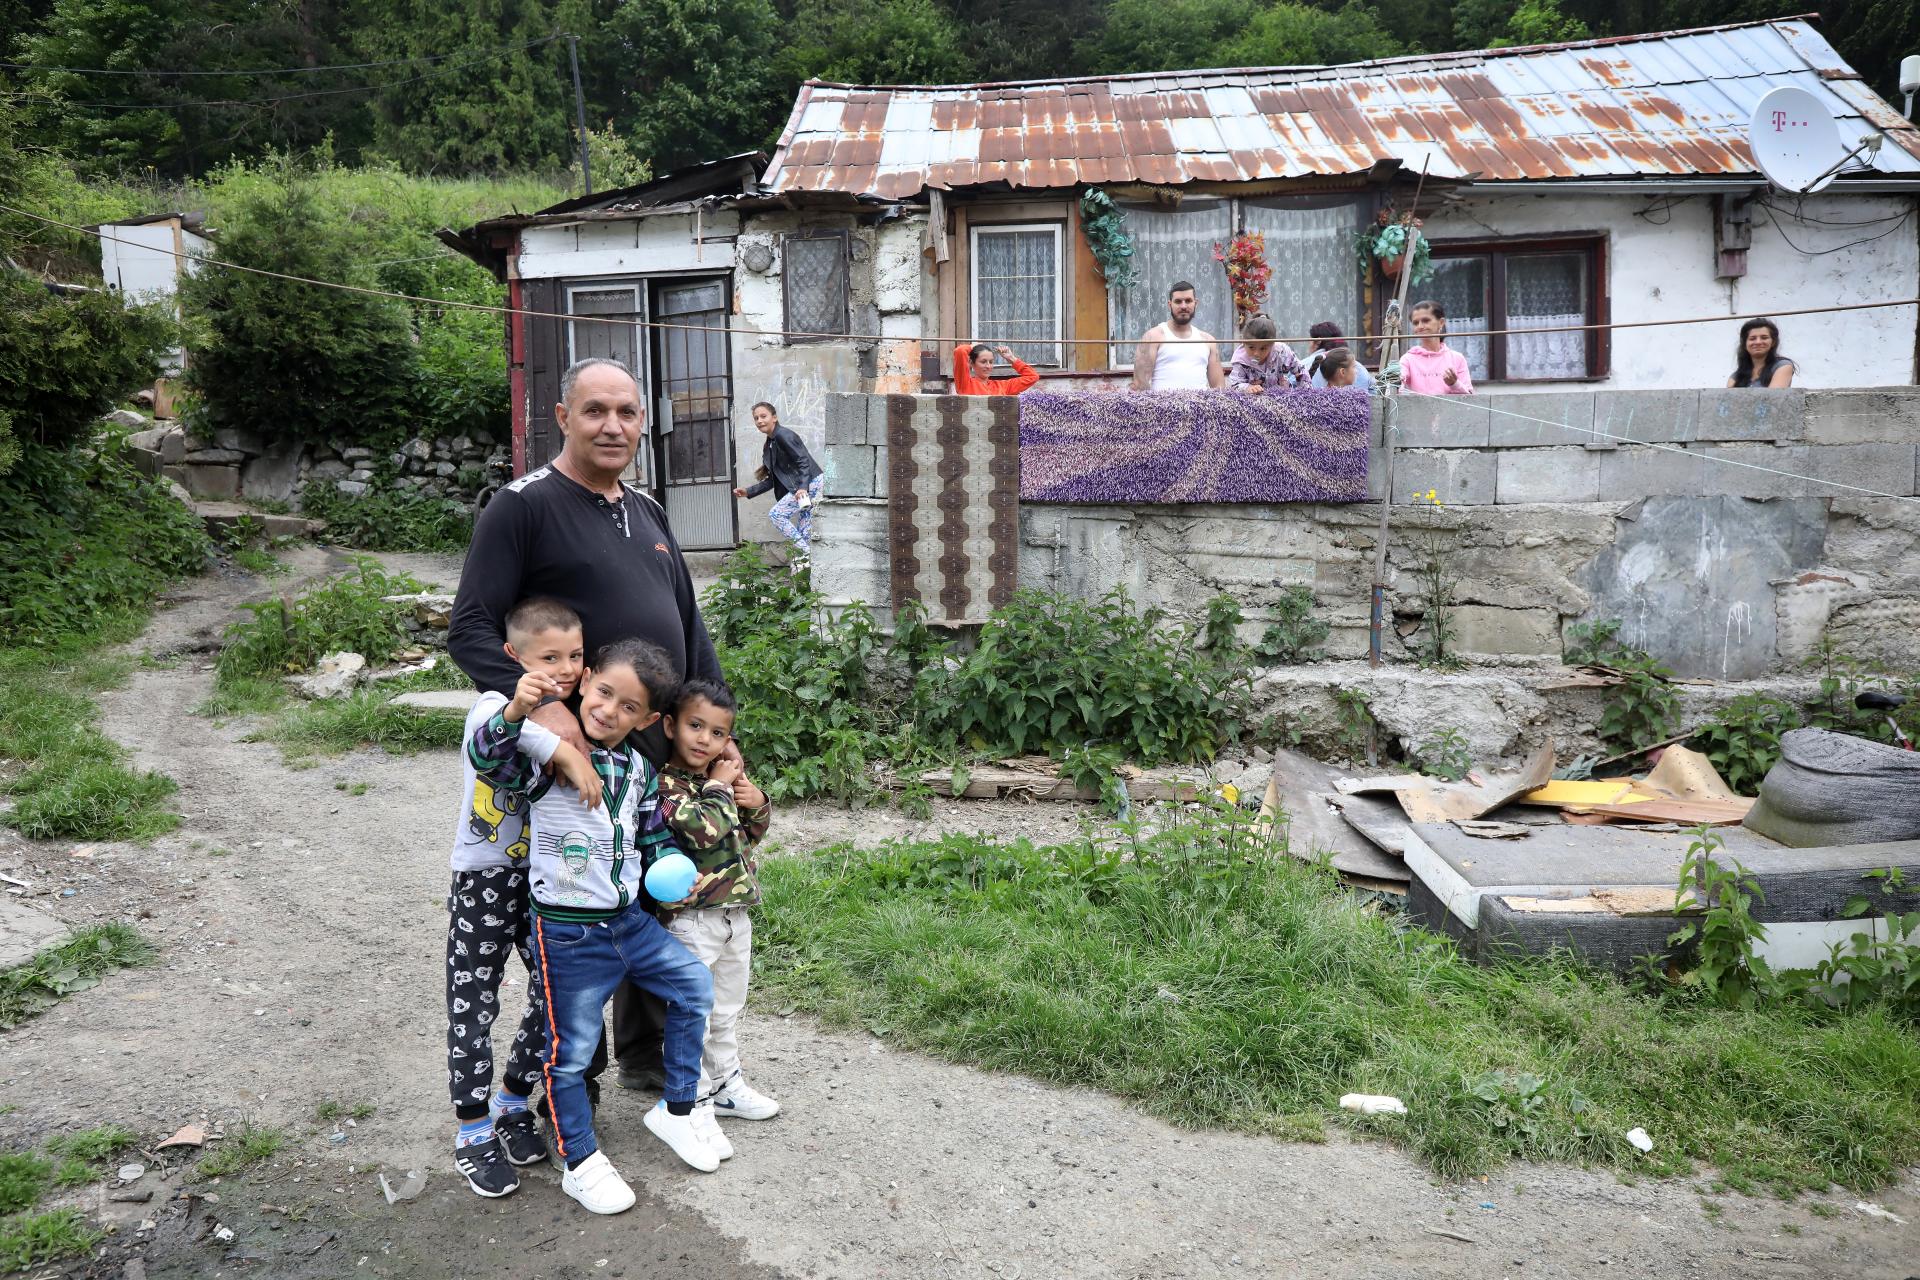 Treba riešiť hrozné životné podmienky tisícov Rómov, tvrdí splnomocnenec. Chce využiť zdroje z Únie